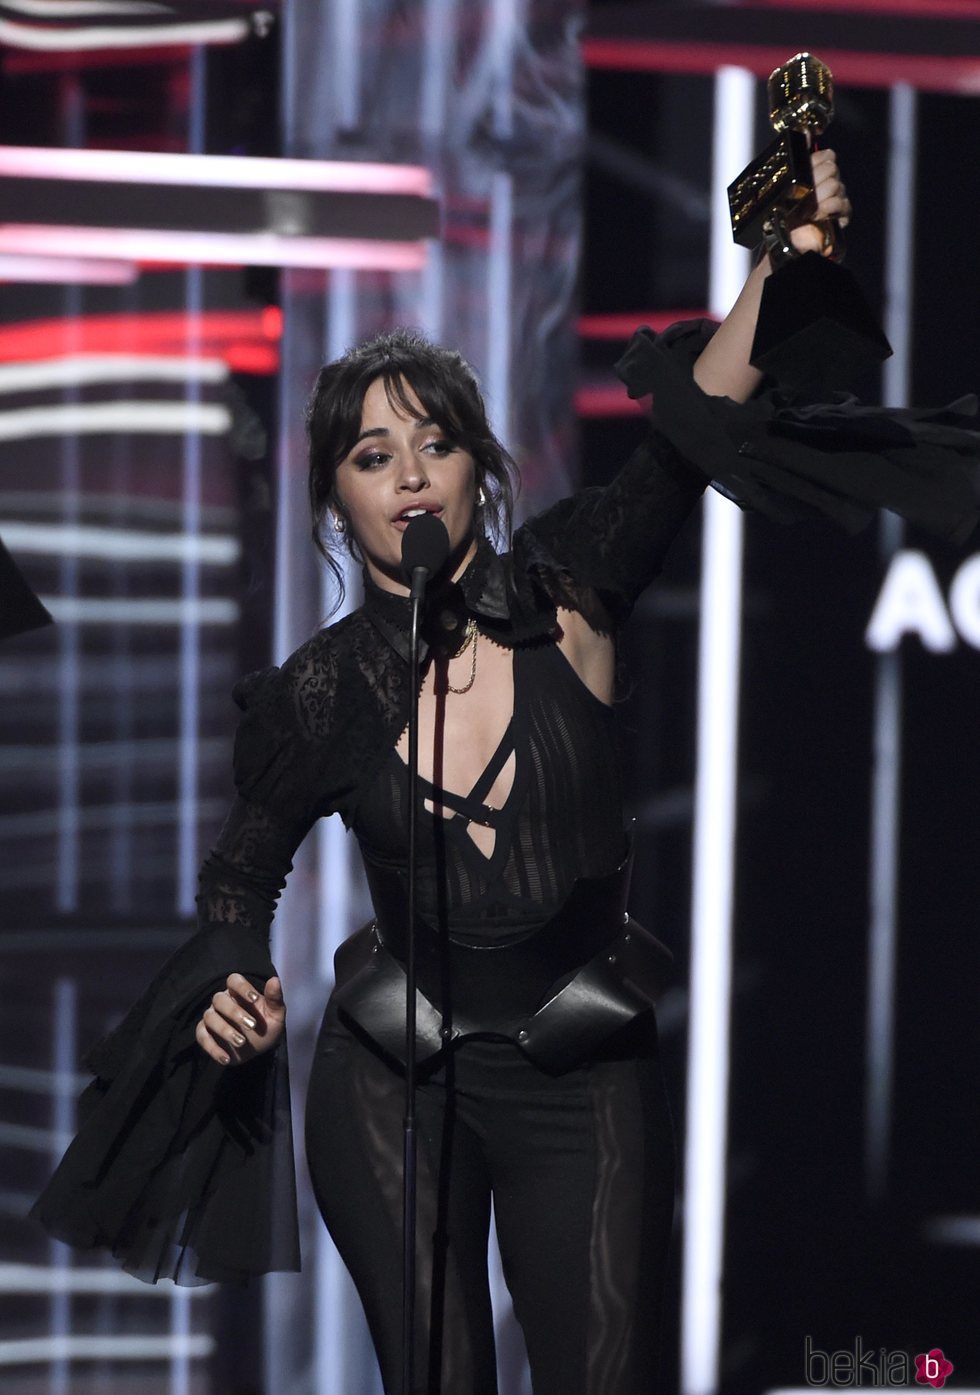 Camila Cabello recogiendo su galardón durante la gala de los Premios Billboard 2018